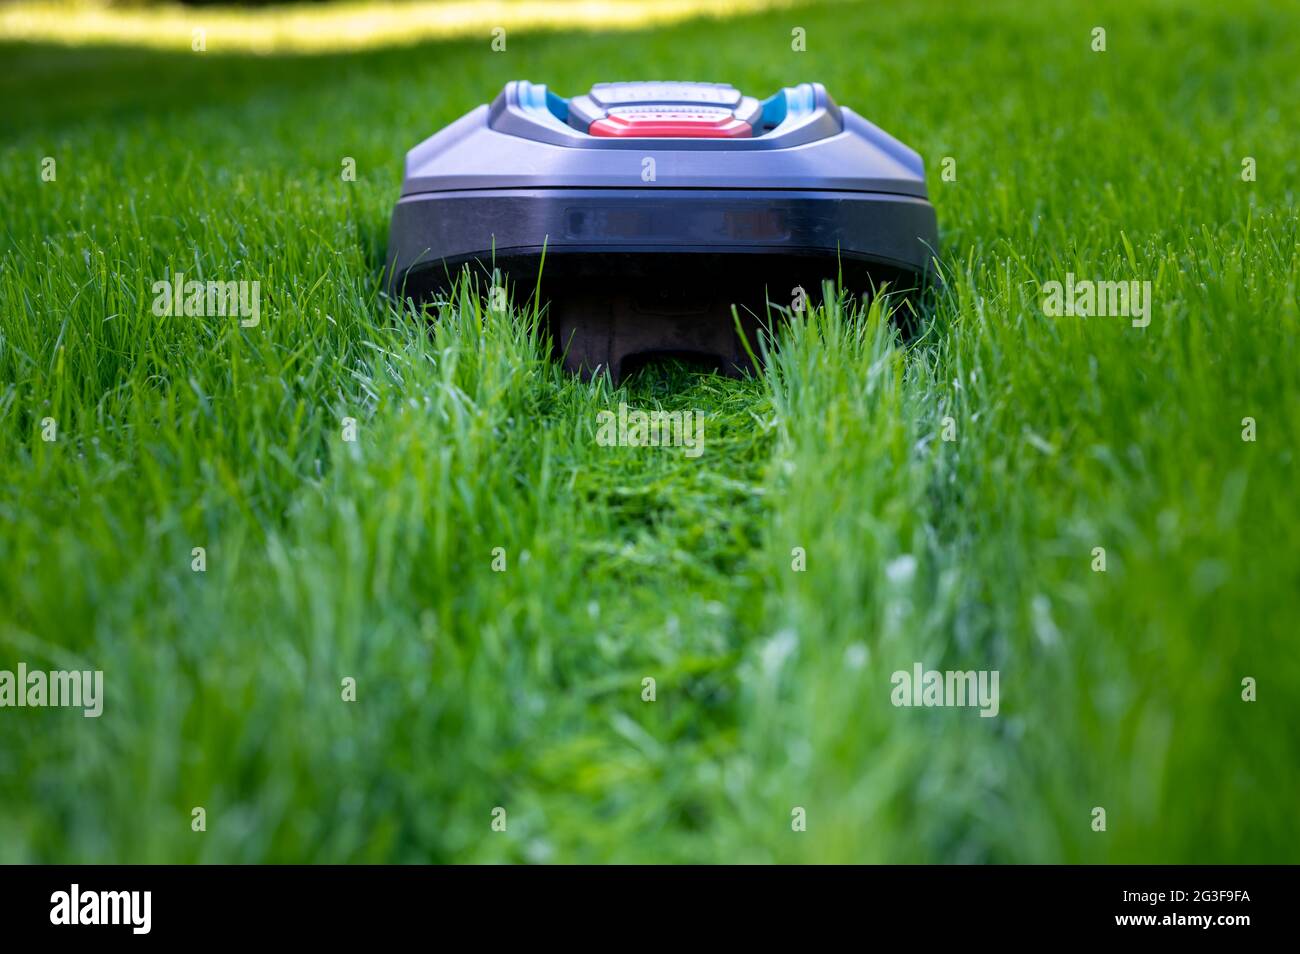 Robot mower cutting high grass. Stock Photo